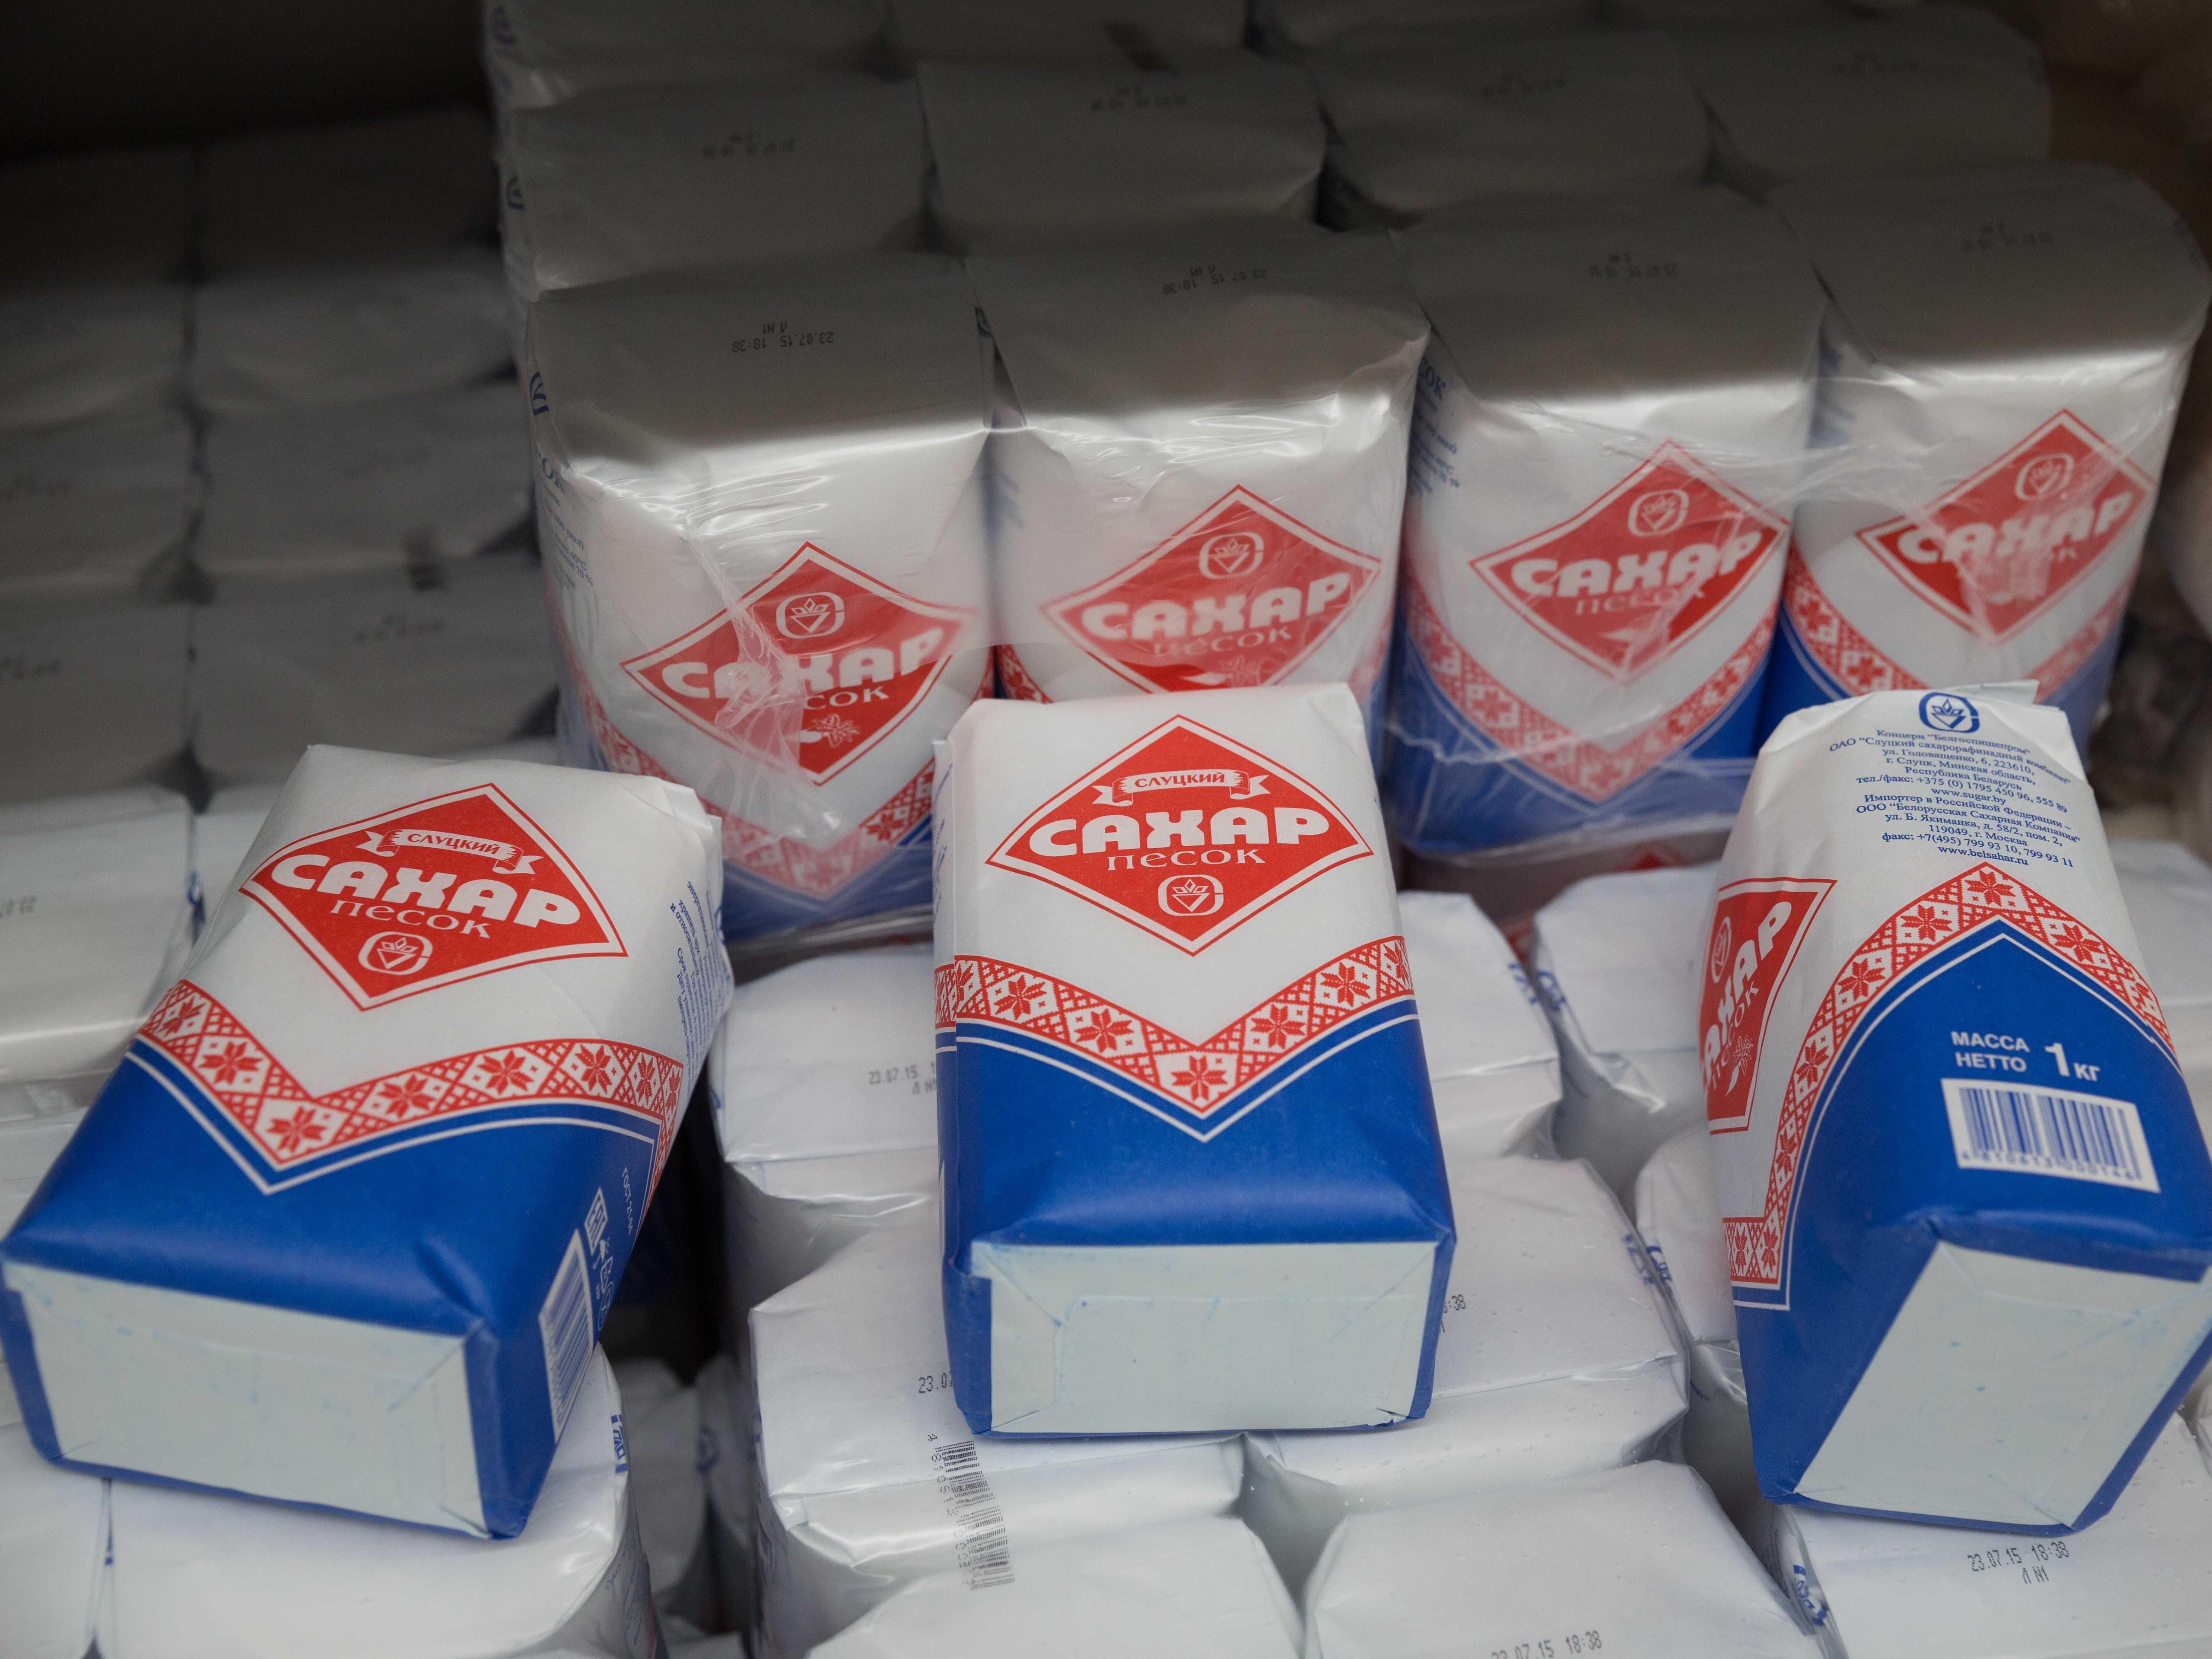 ФАС и Минсельхозу поручено представить меры по снижению цен на сахар